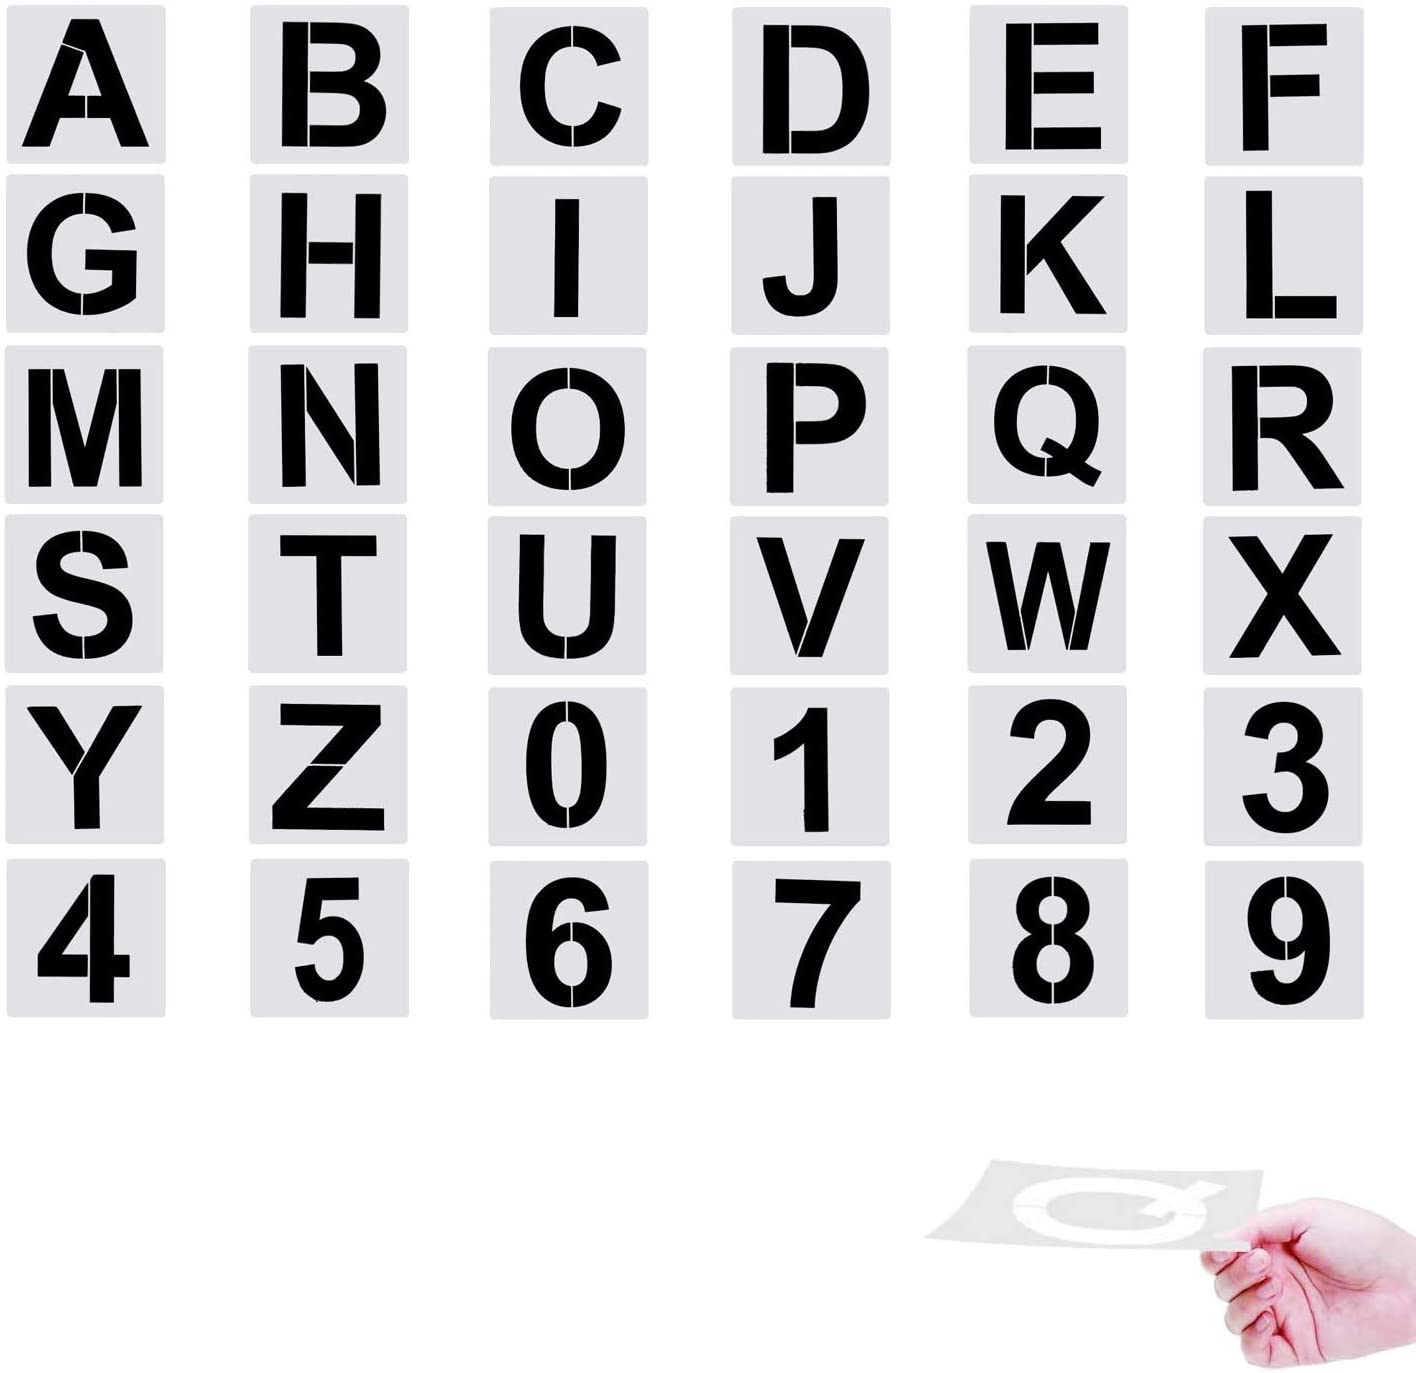 42 plantillas de plantillas de letras y números, plantillas de alfabeto  reutilizables y lavable Abanopi Plantilla